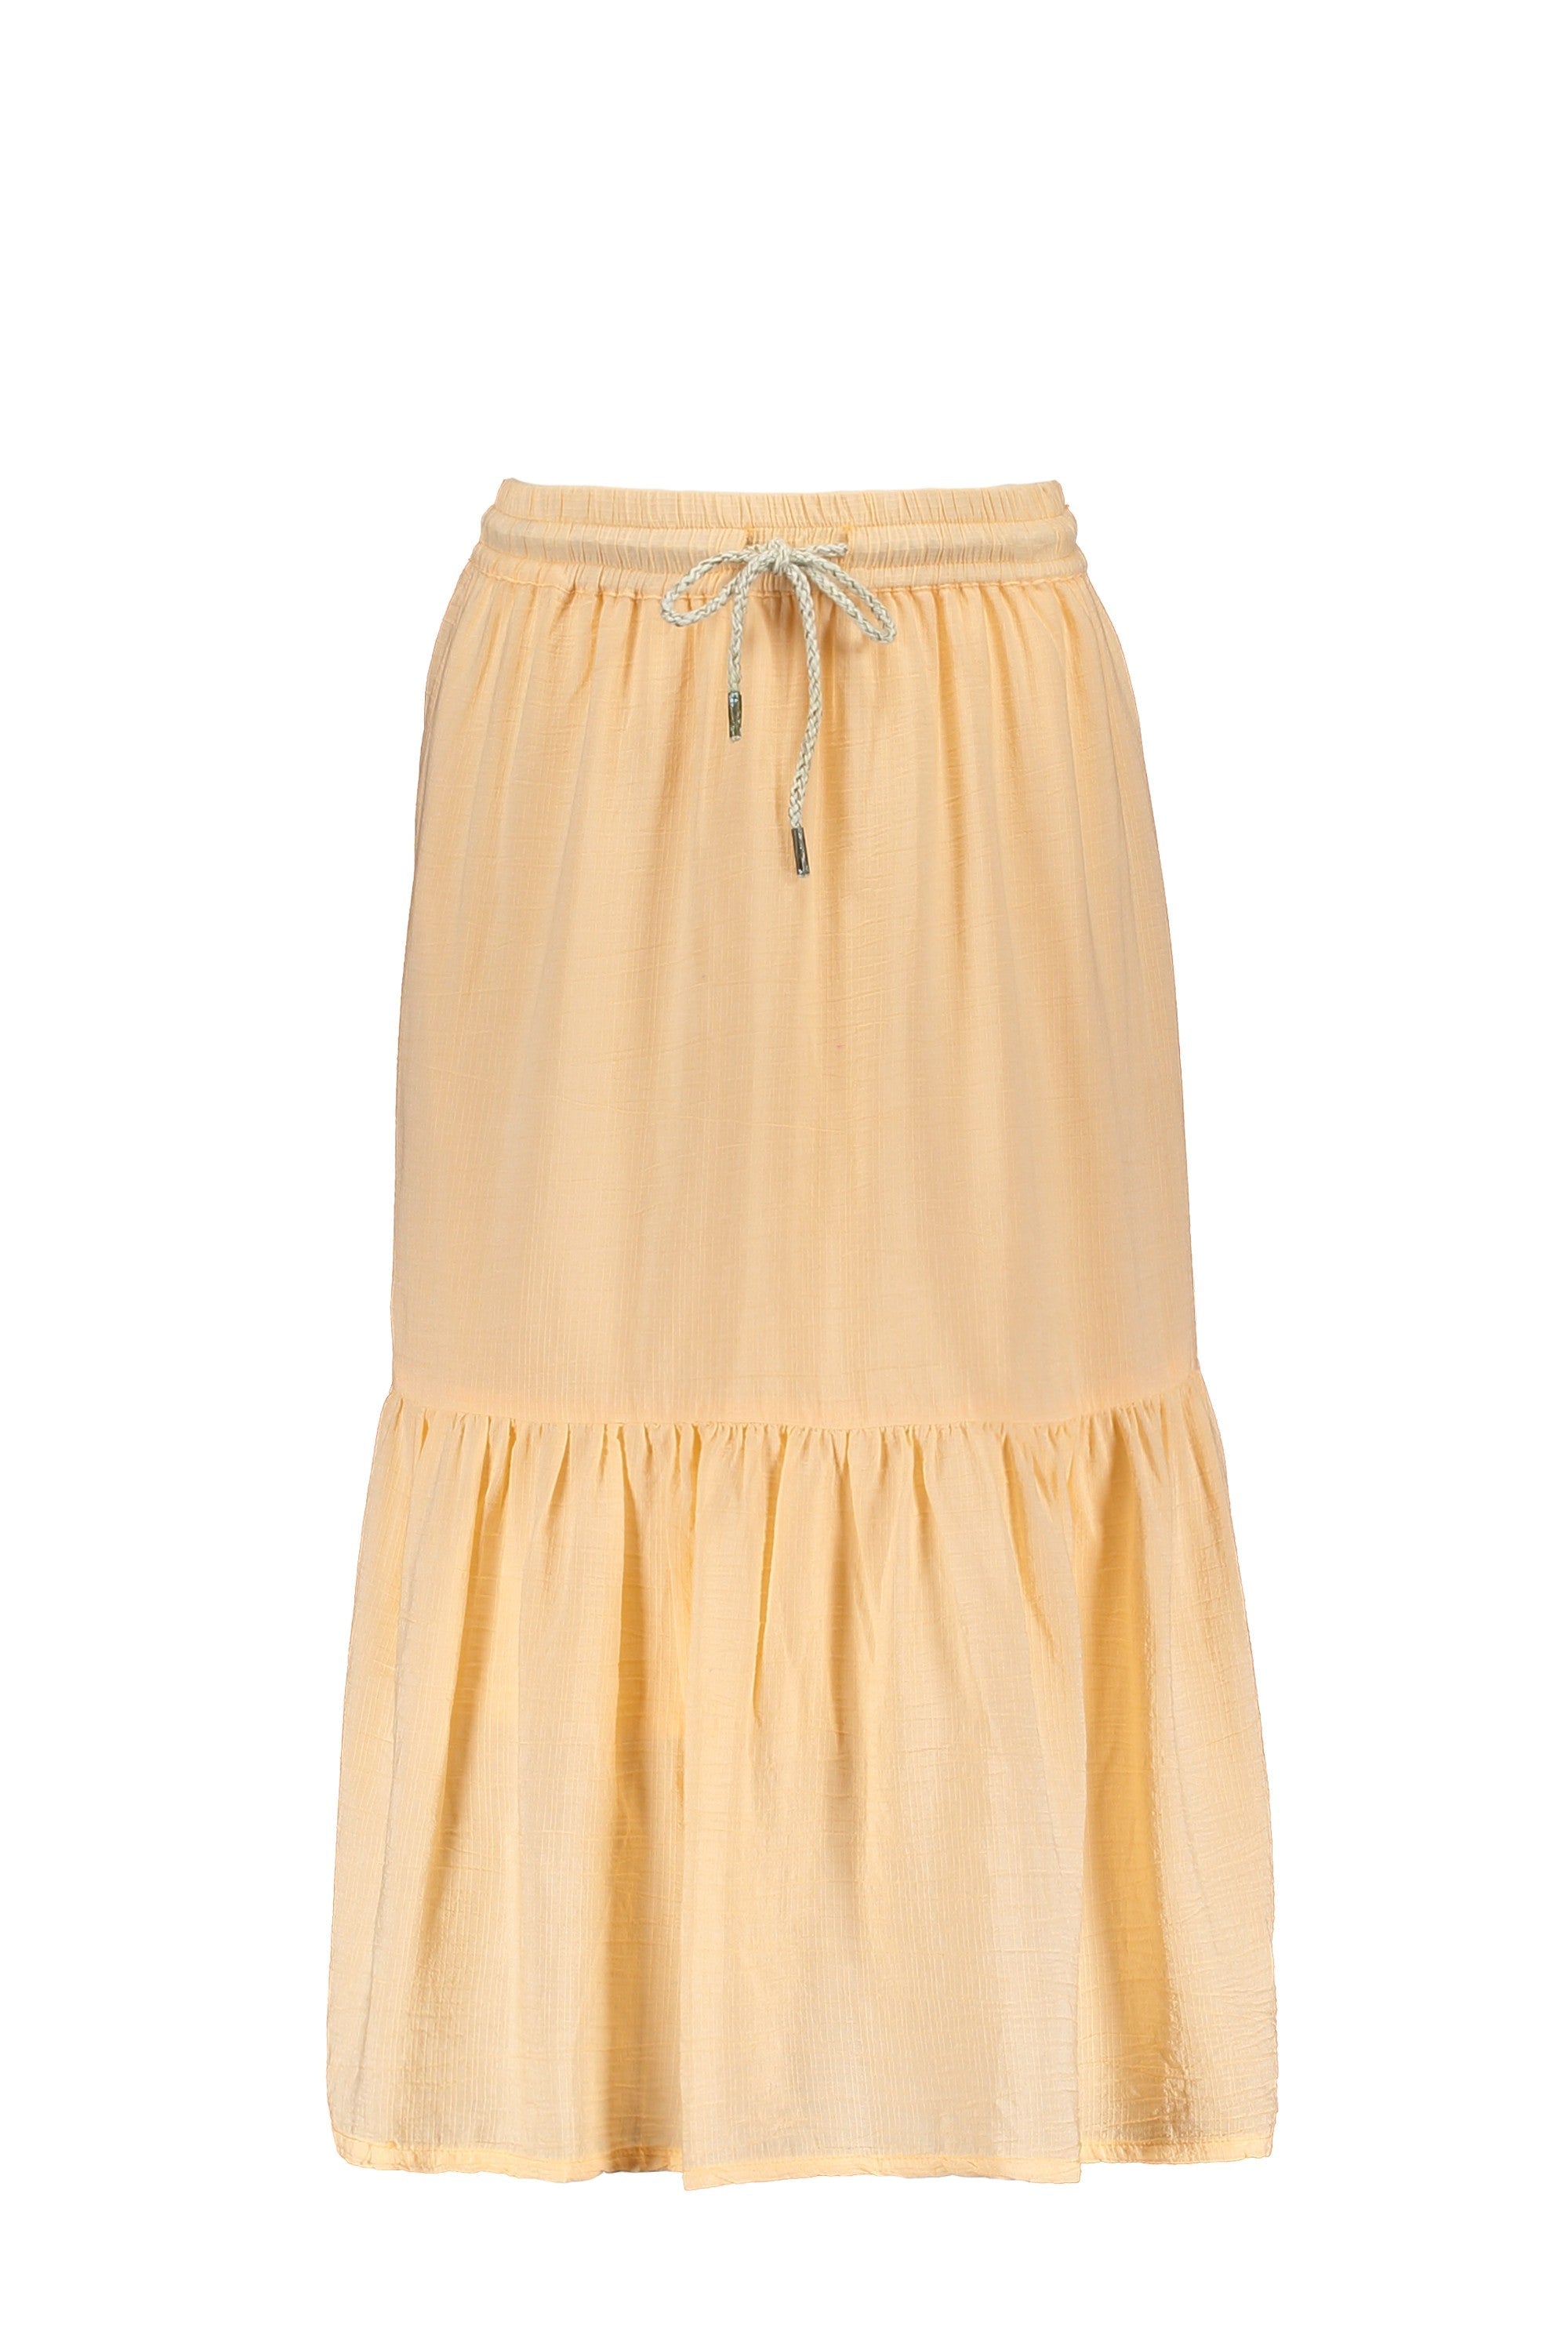 Meisjes Viscose Linnen Maxi Skirt van Like Flo in de kleur Soft peach in maat 152.